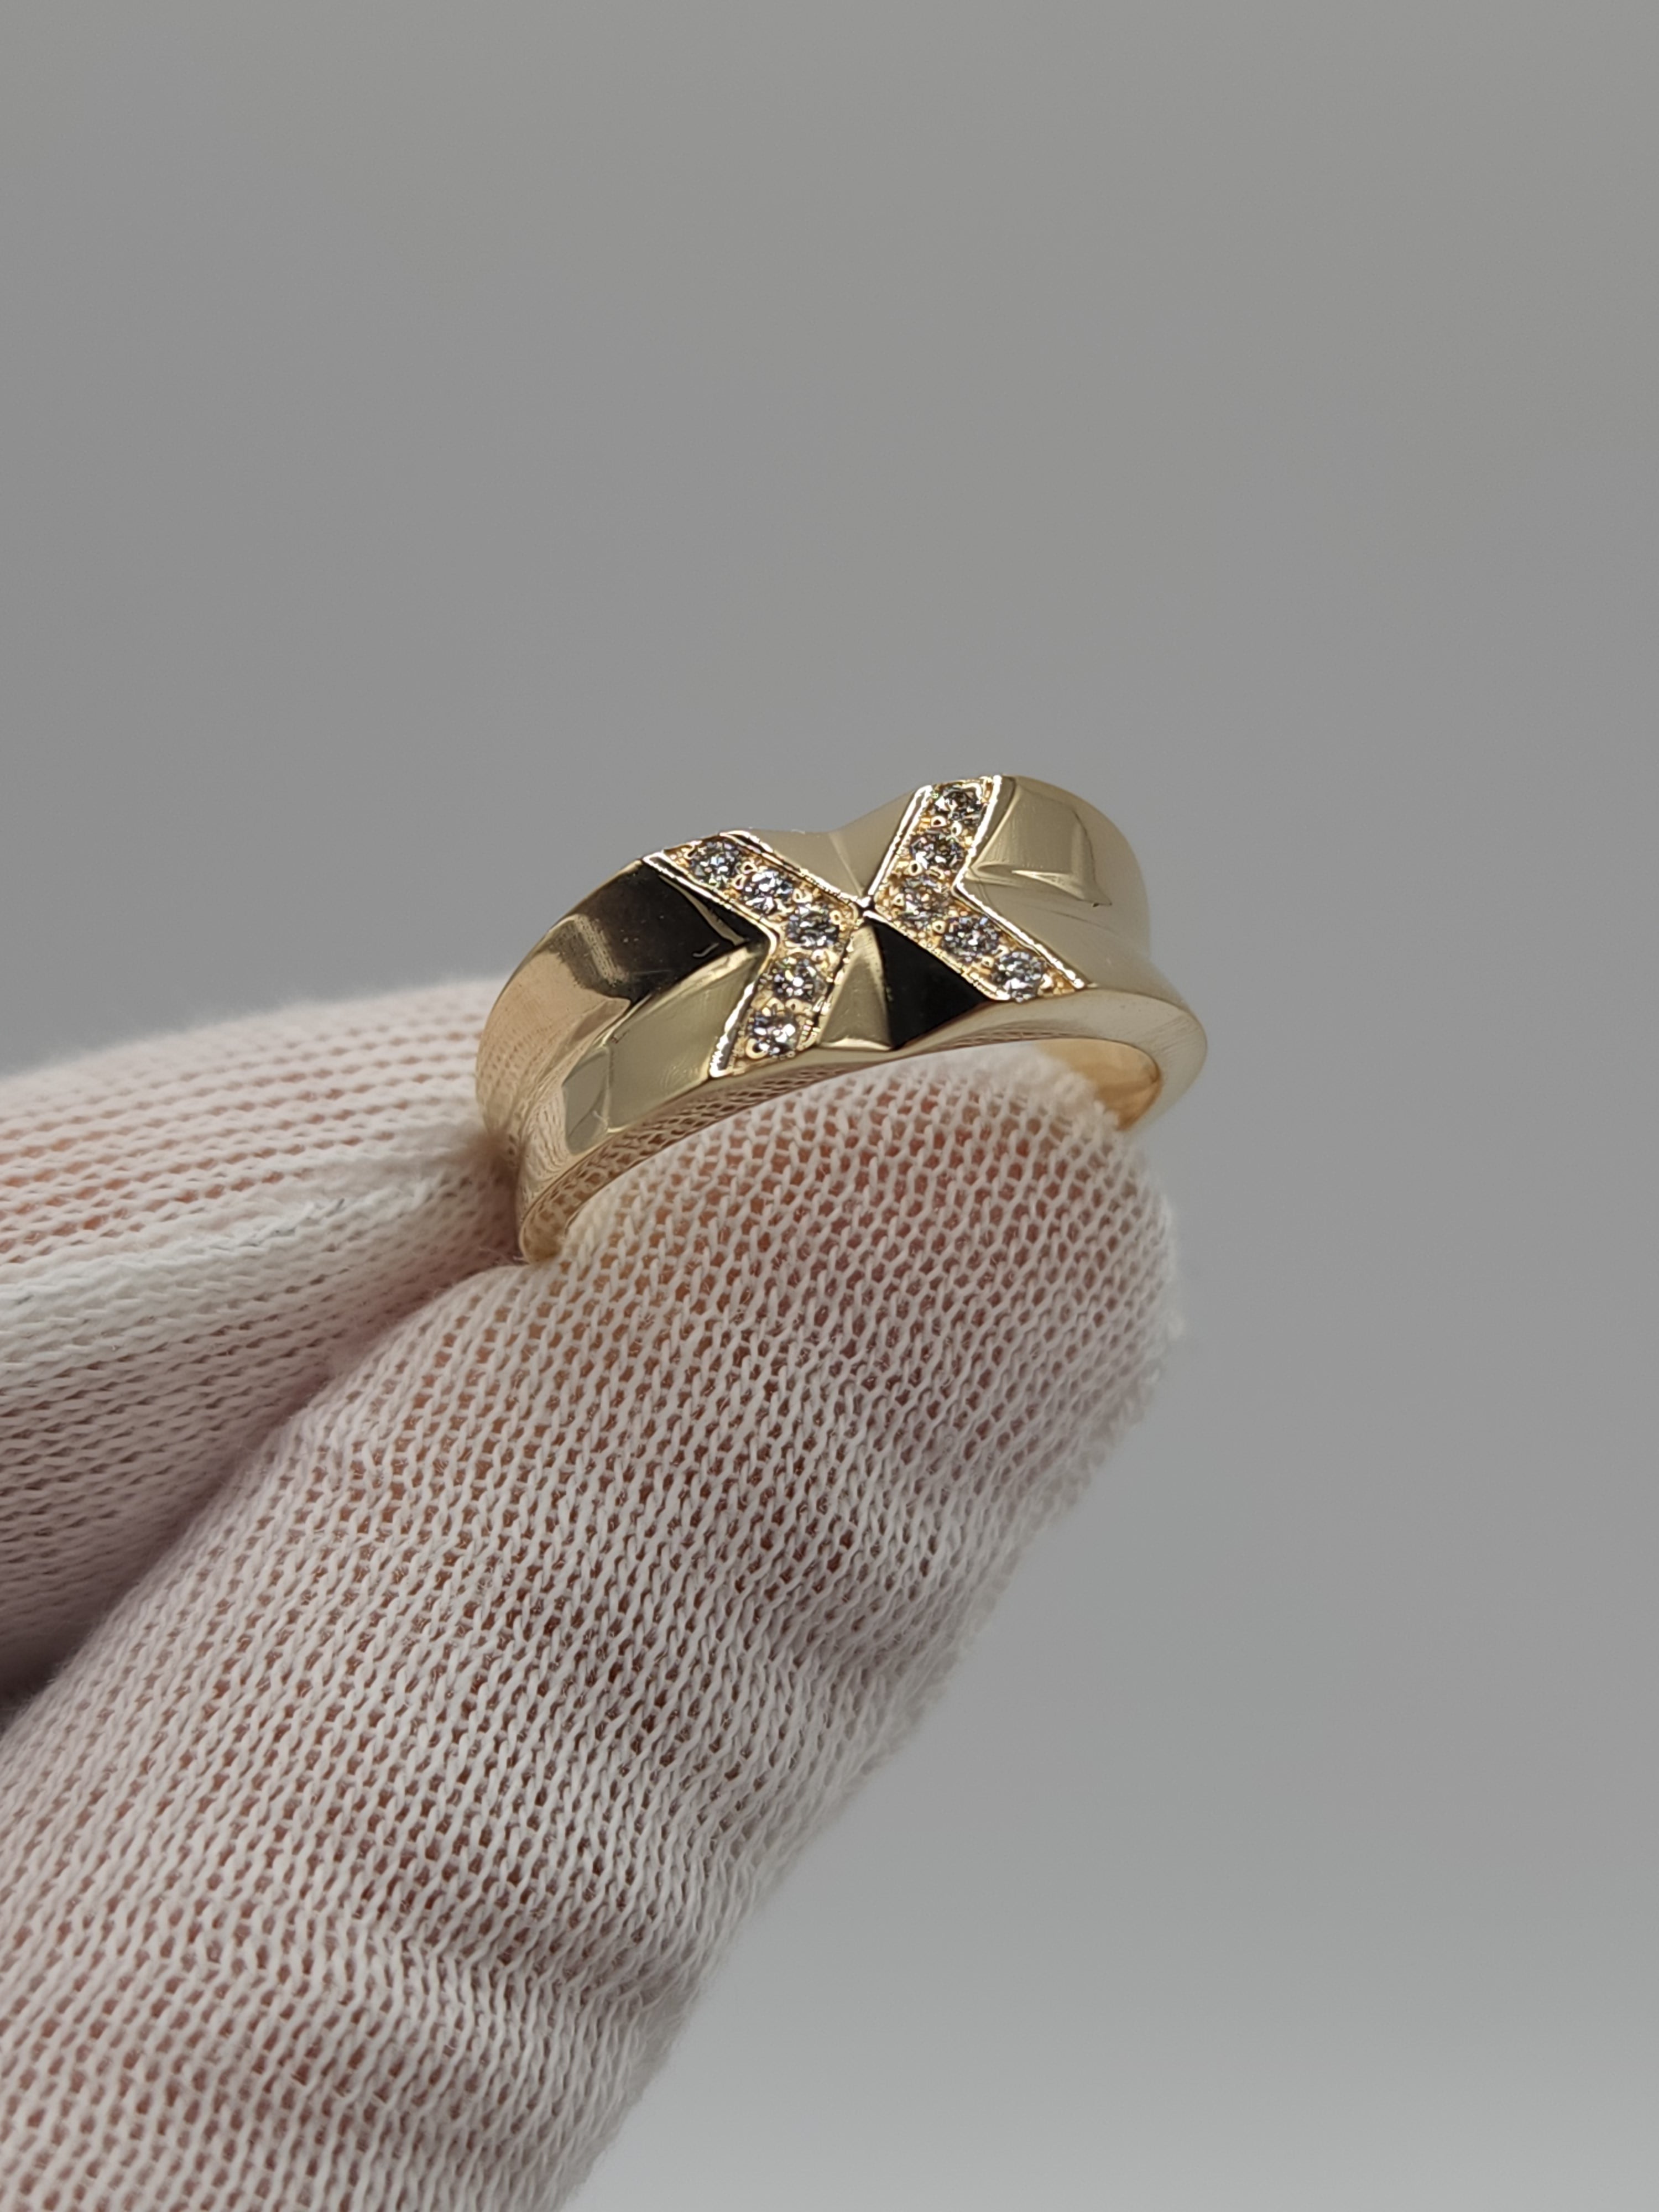 14Kt Gold X Men's Diamond Ring